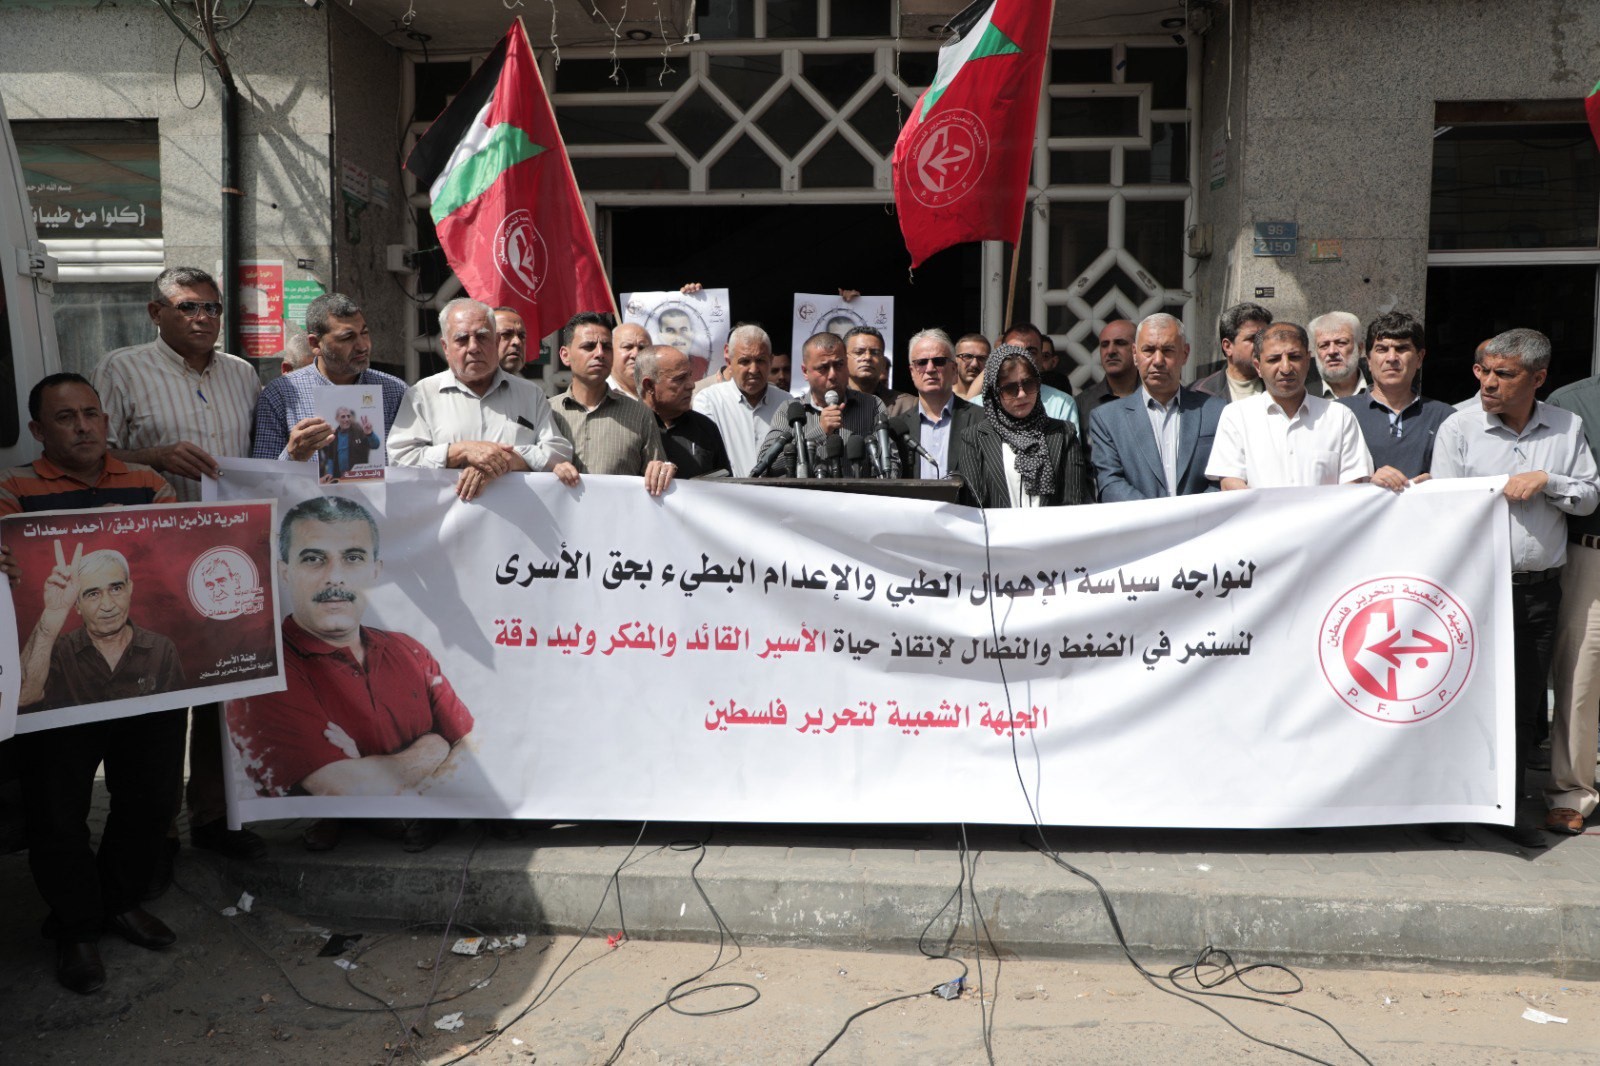 لمؤتمر الصحفي الذي نظمته الجبهة الشعبيّة لتحرير فلسطين أمام برج شوا وحصري بمدينة غزّة 5.jpg